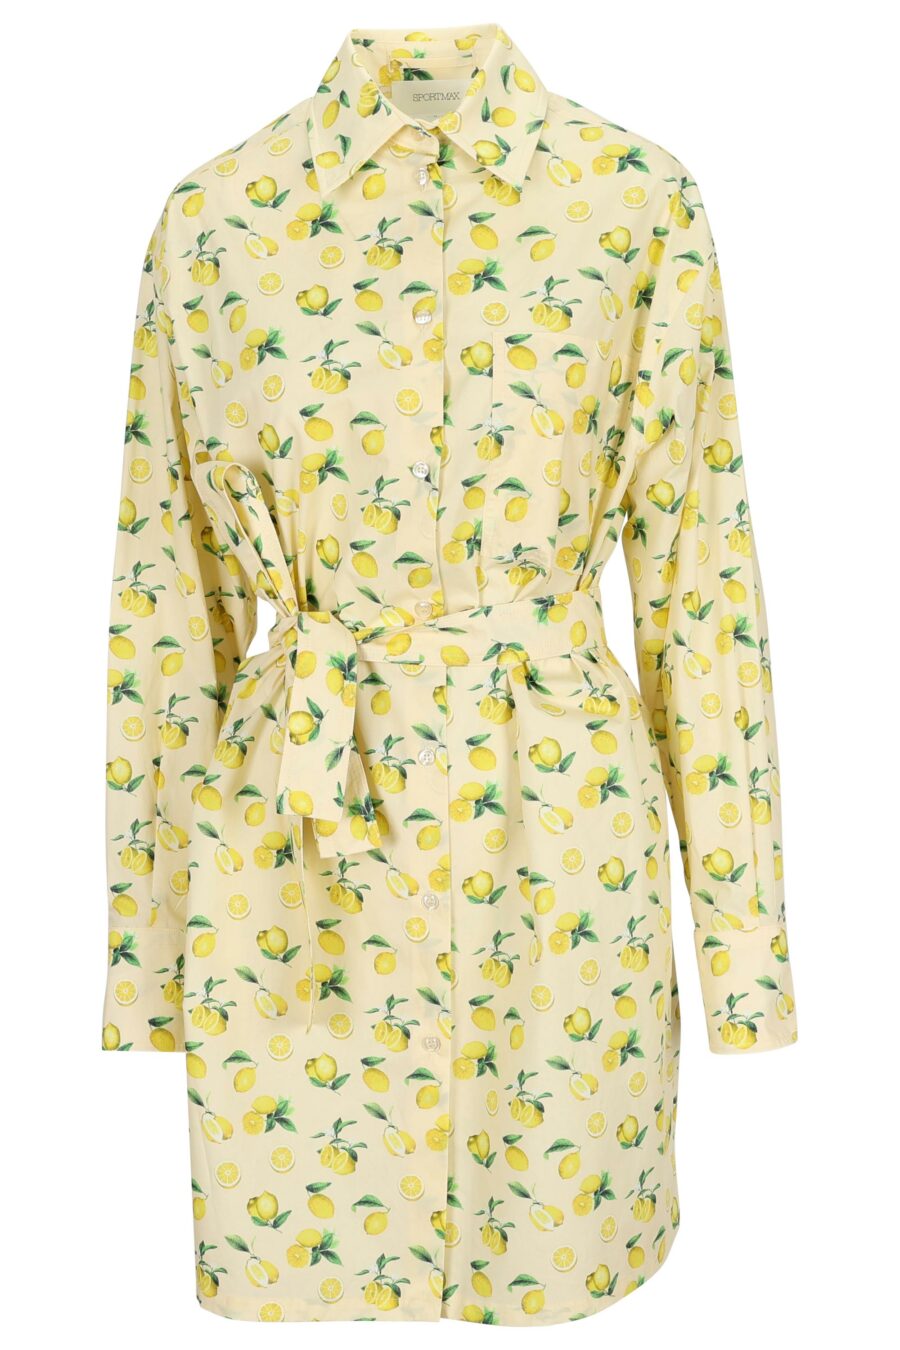 Vestido manga larga color vainilla con estampado limones - 22211242060013